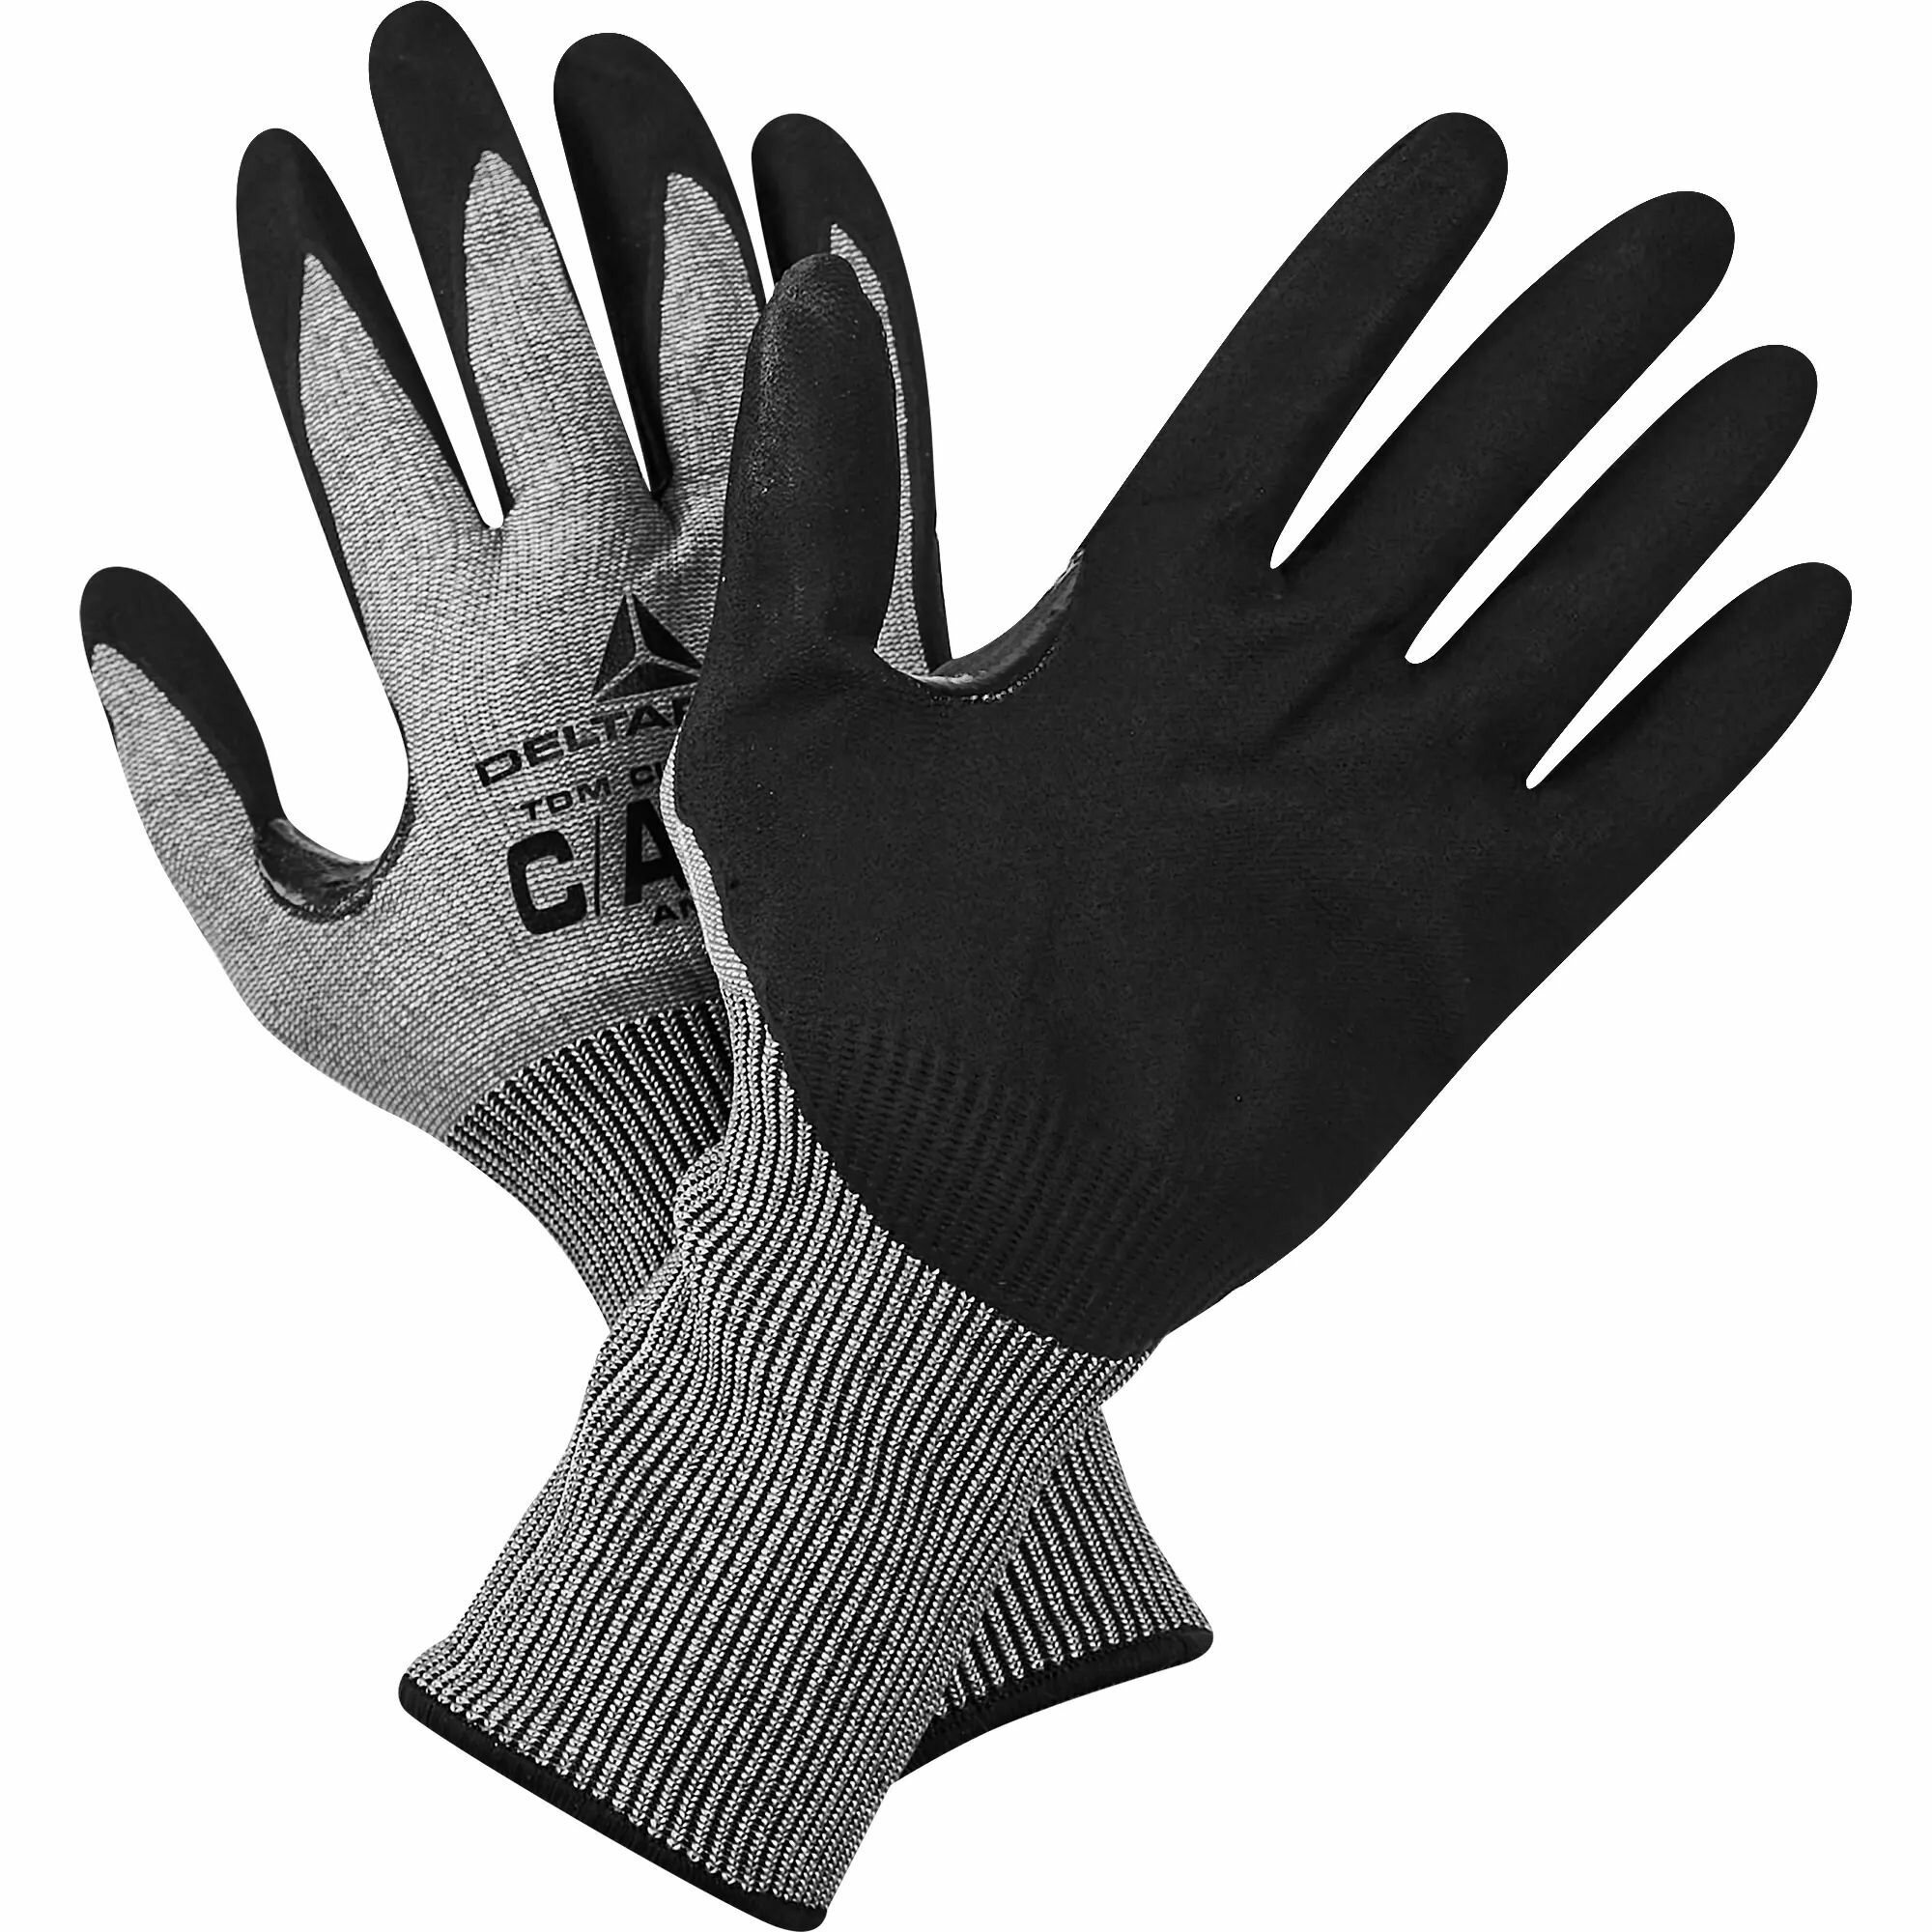 Антипорезные перчатки с нитриловым покрытием Delta Plus VECUTC01GR10 размер 10